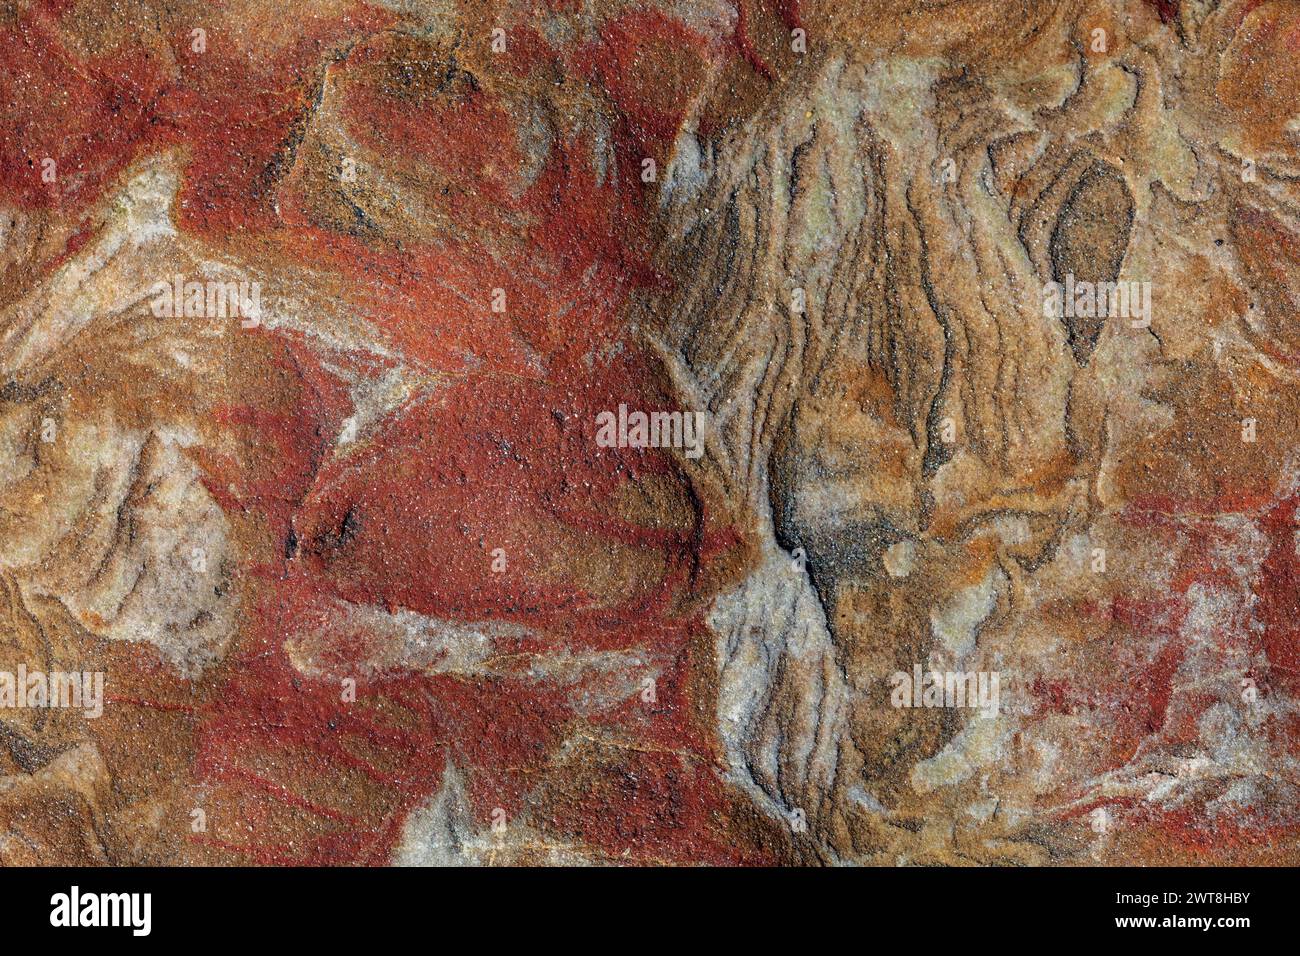 Splendide fotografie artistiche ad alta risoluzione di rocce rosse e sabbiose provenienti da Fife in Scozia, possono essere utilizzate come sfondo o immagine Foto Stock